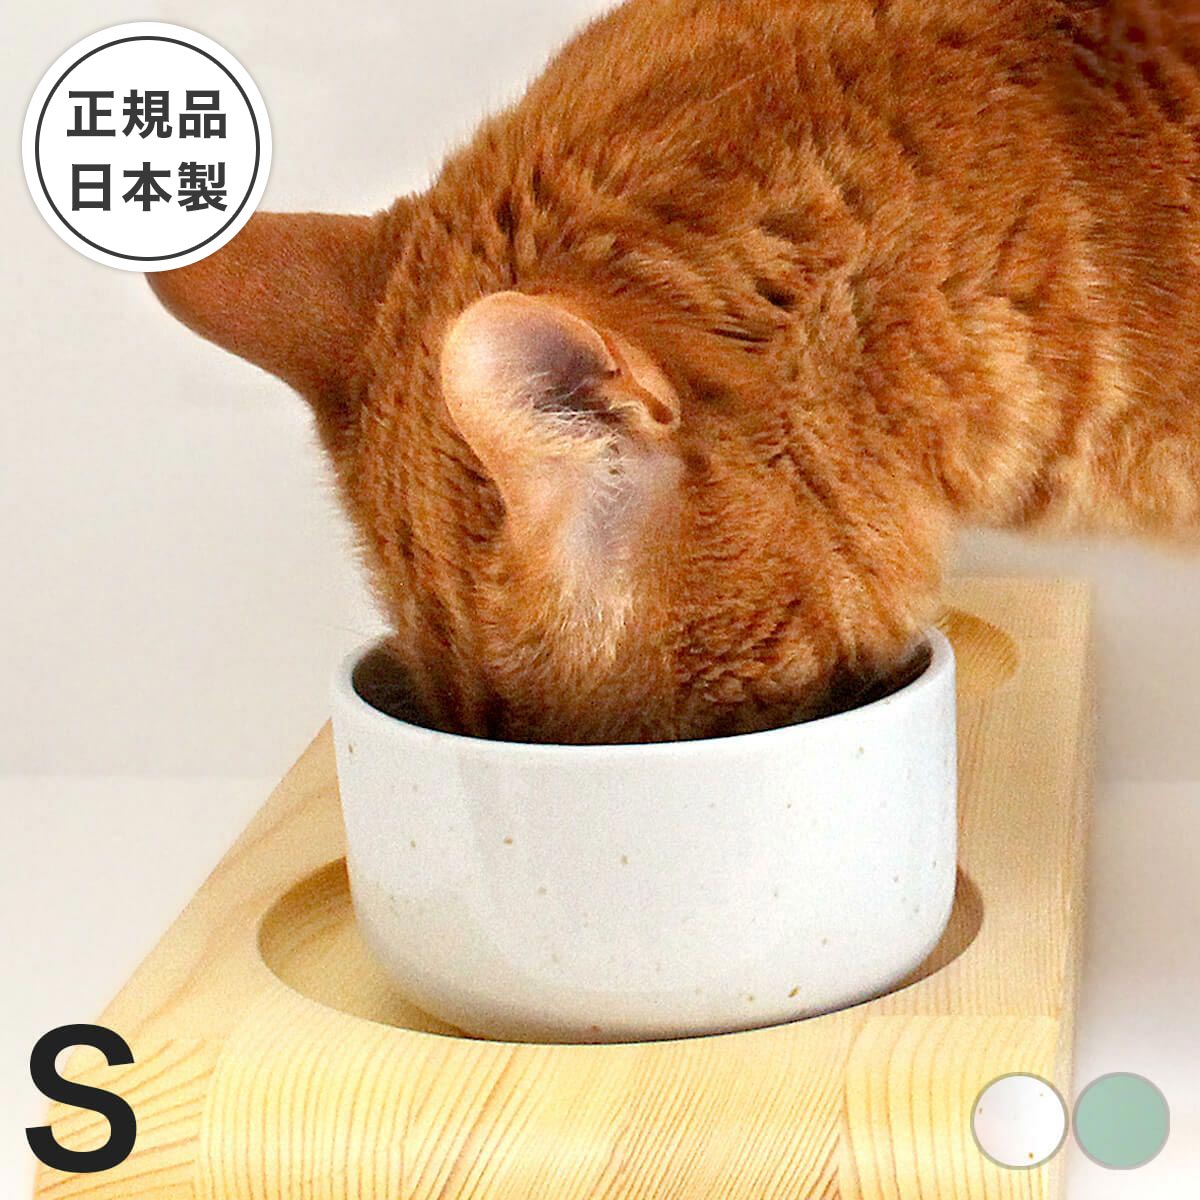 食器 猫 ヘルスウォーター ボウル S 水飲み 水をよく飲む器 水飲み器 水入れ 水 皿 水分補給 ひっくり返らない 倒れ…